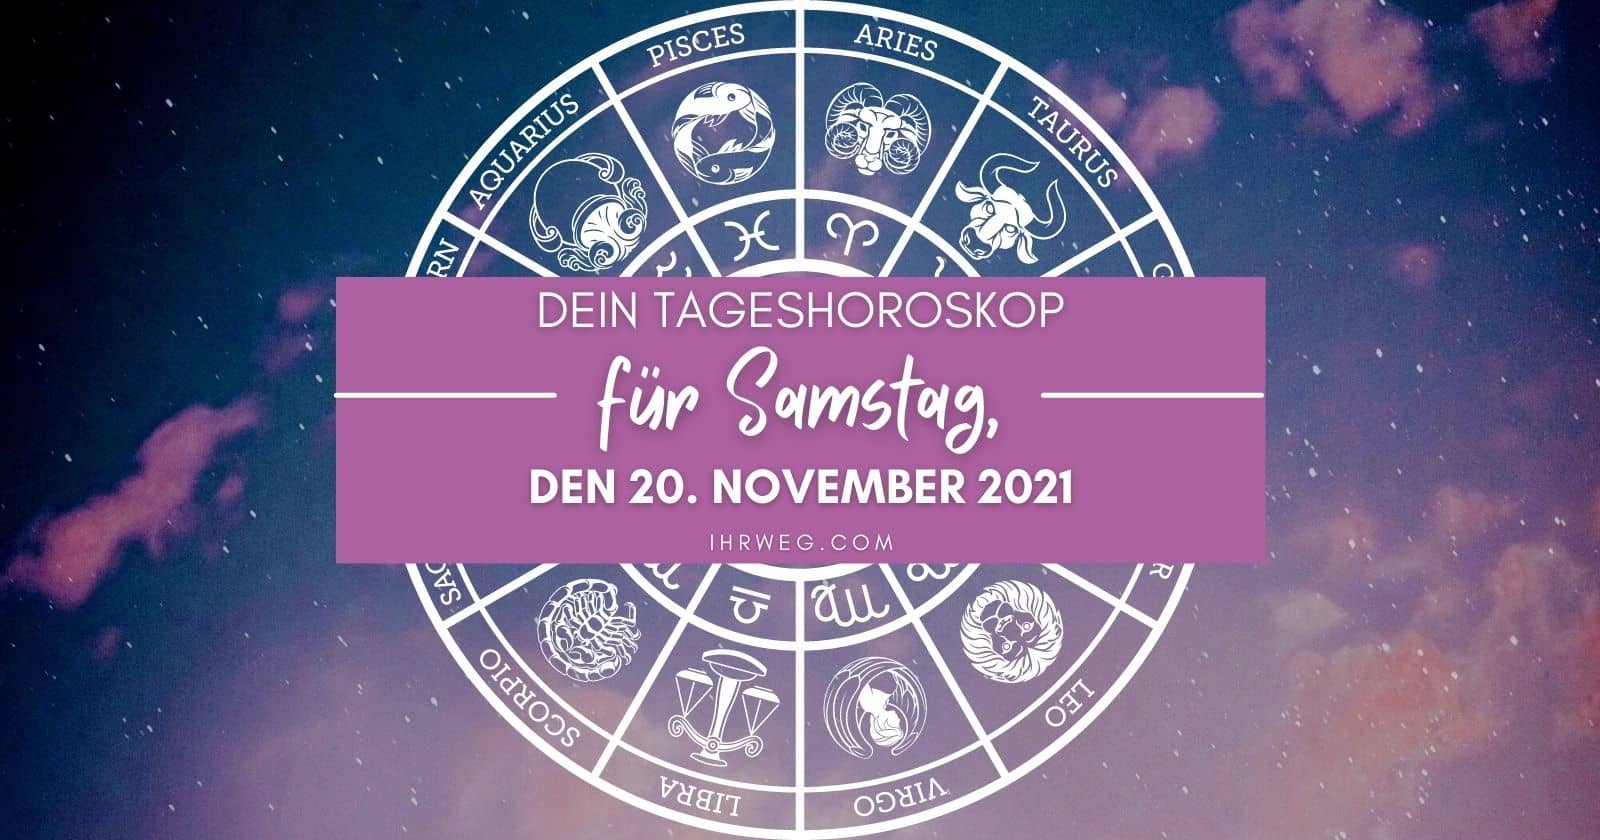 Horoskop heute: Dein Tageshoroskop für Samstag, den 20. November 2021